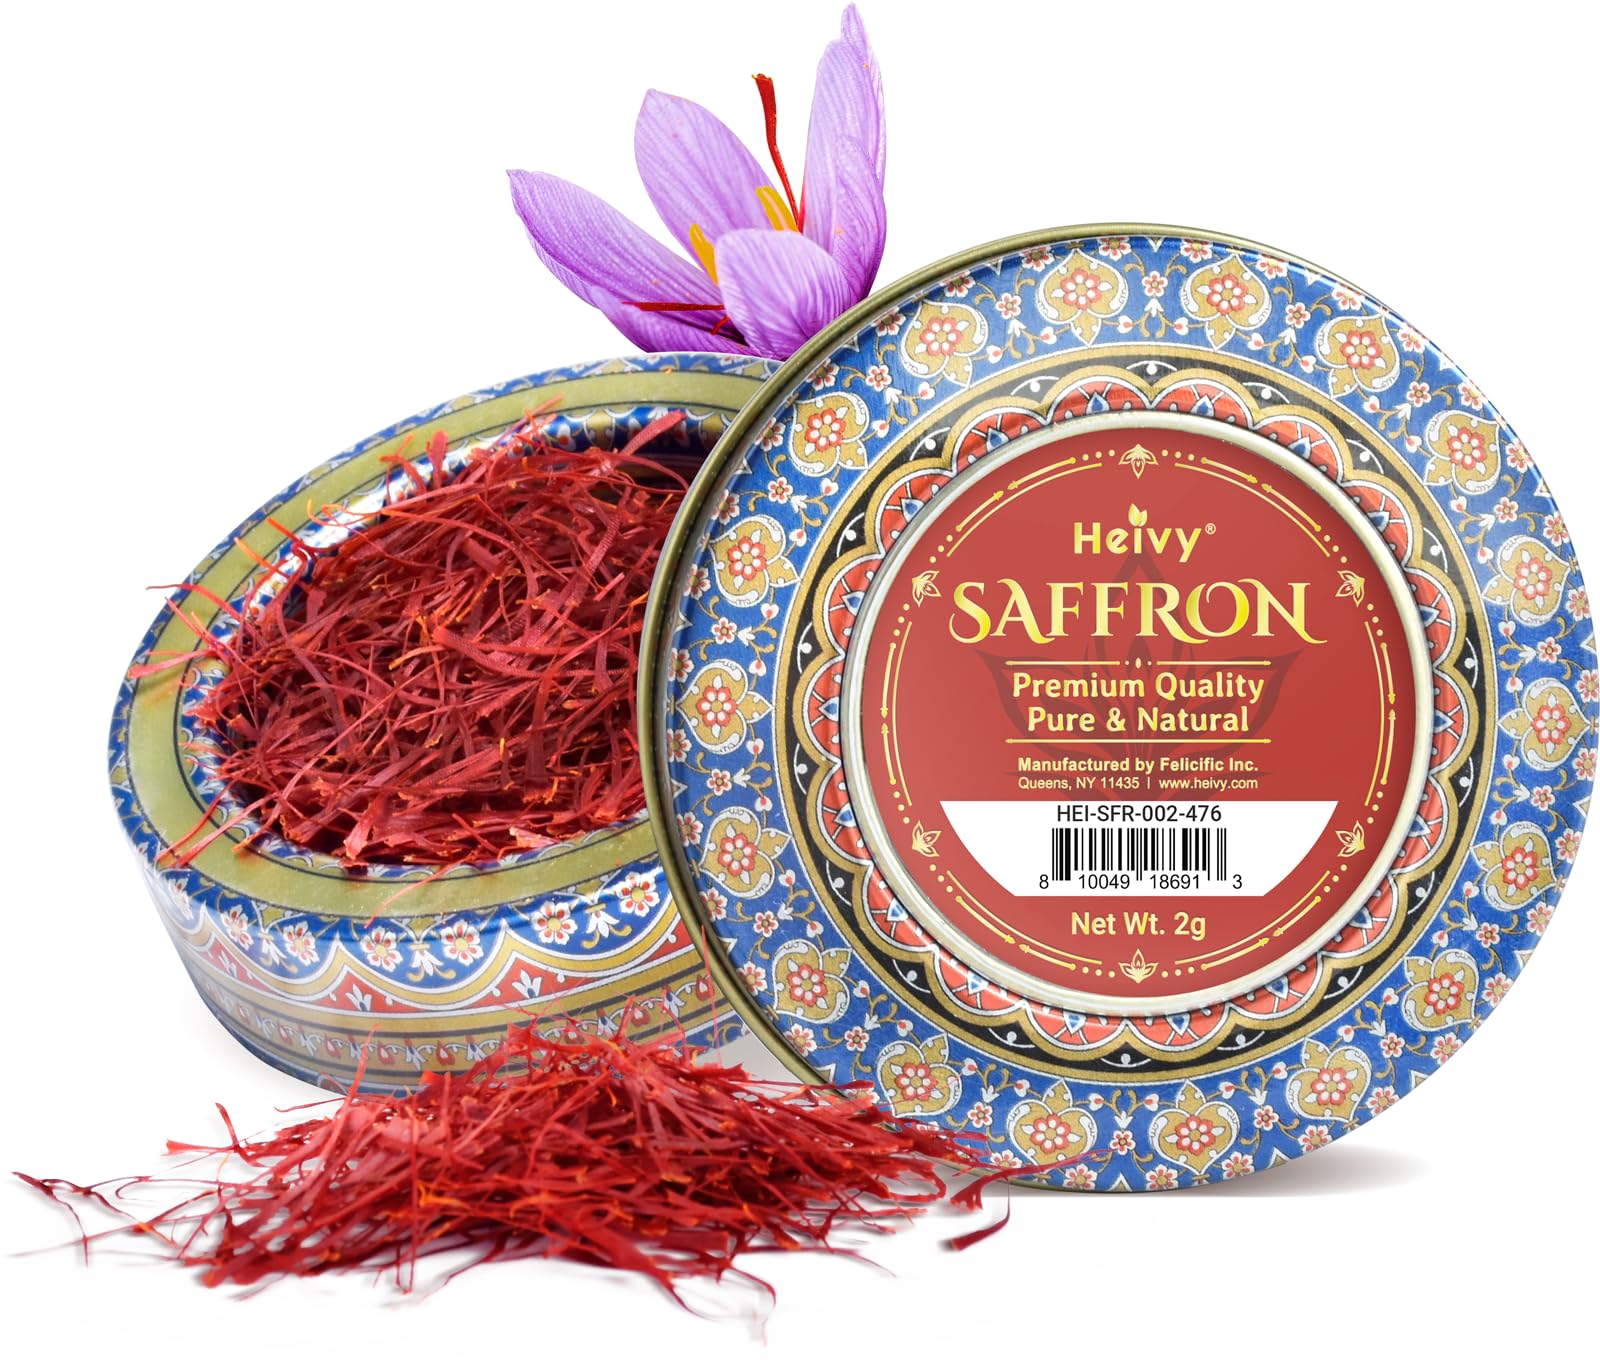 2-Grams Heivy  Premium Saffron Threads $9.30 w/ S&S + Free Shipping w/ Prime or on $35+